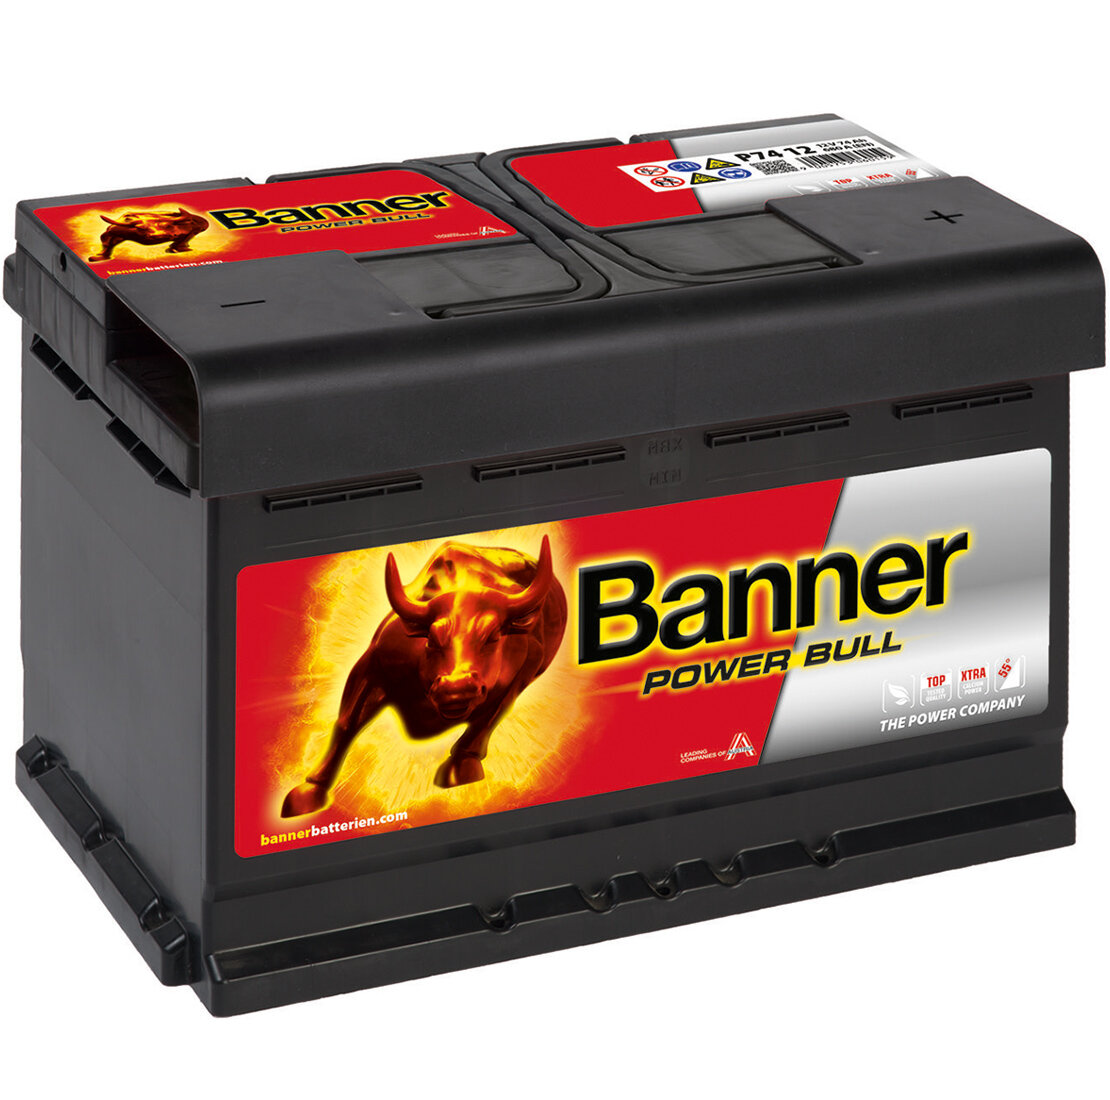 Banner Power Bull P74 12 Autobatterie 74Ah 12V, 92,90 €